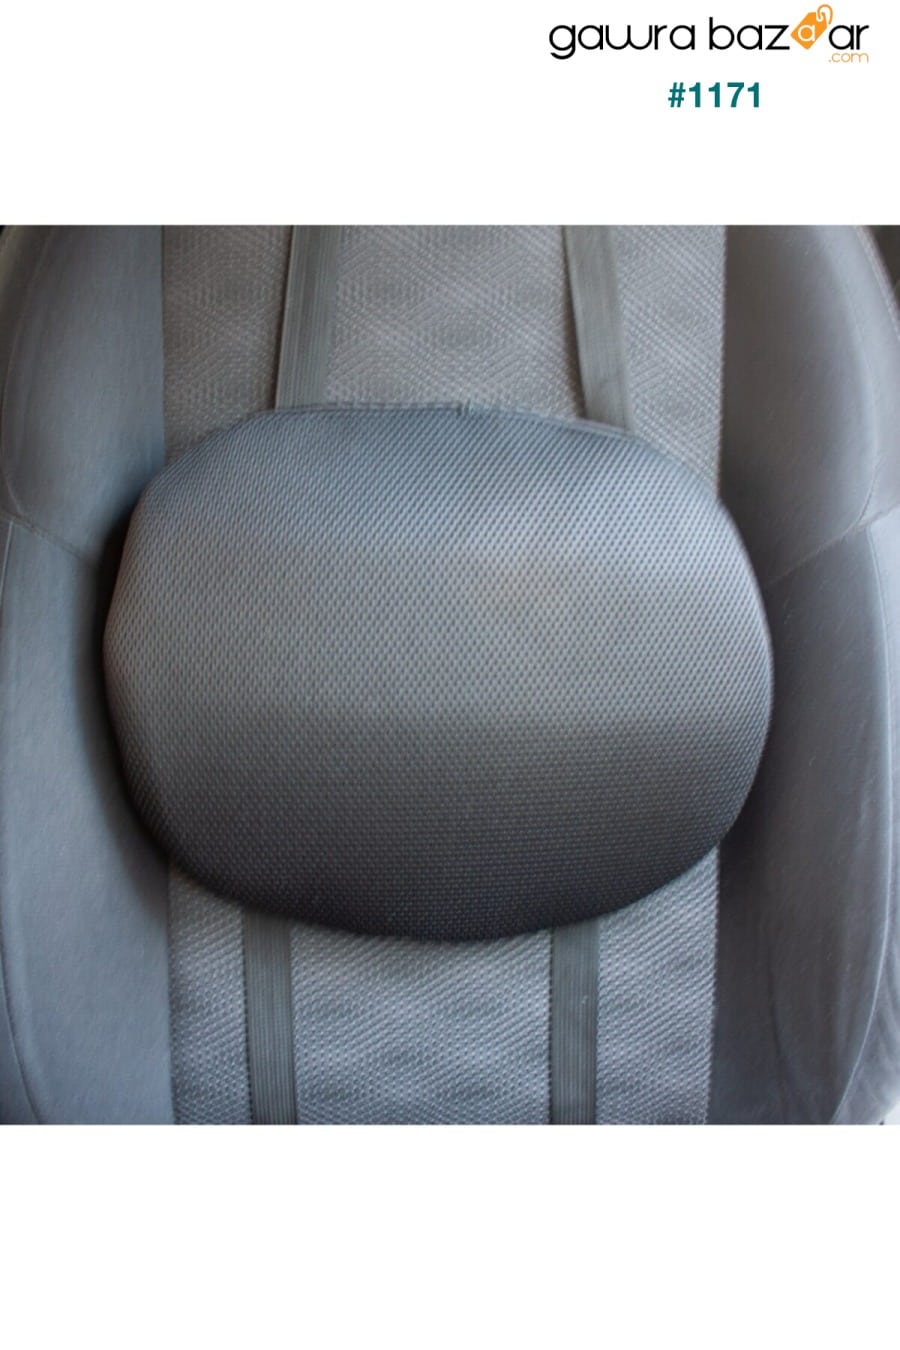 وسادة دعم قطني لمقعد السيارة وسادة مسند ظهر للسيارة وسادة دعم ظهر قطني للسيارة Ankaflex 1